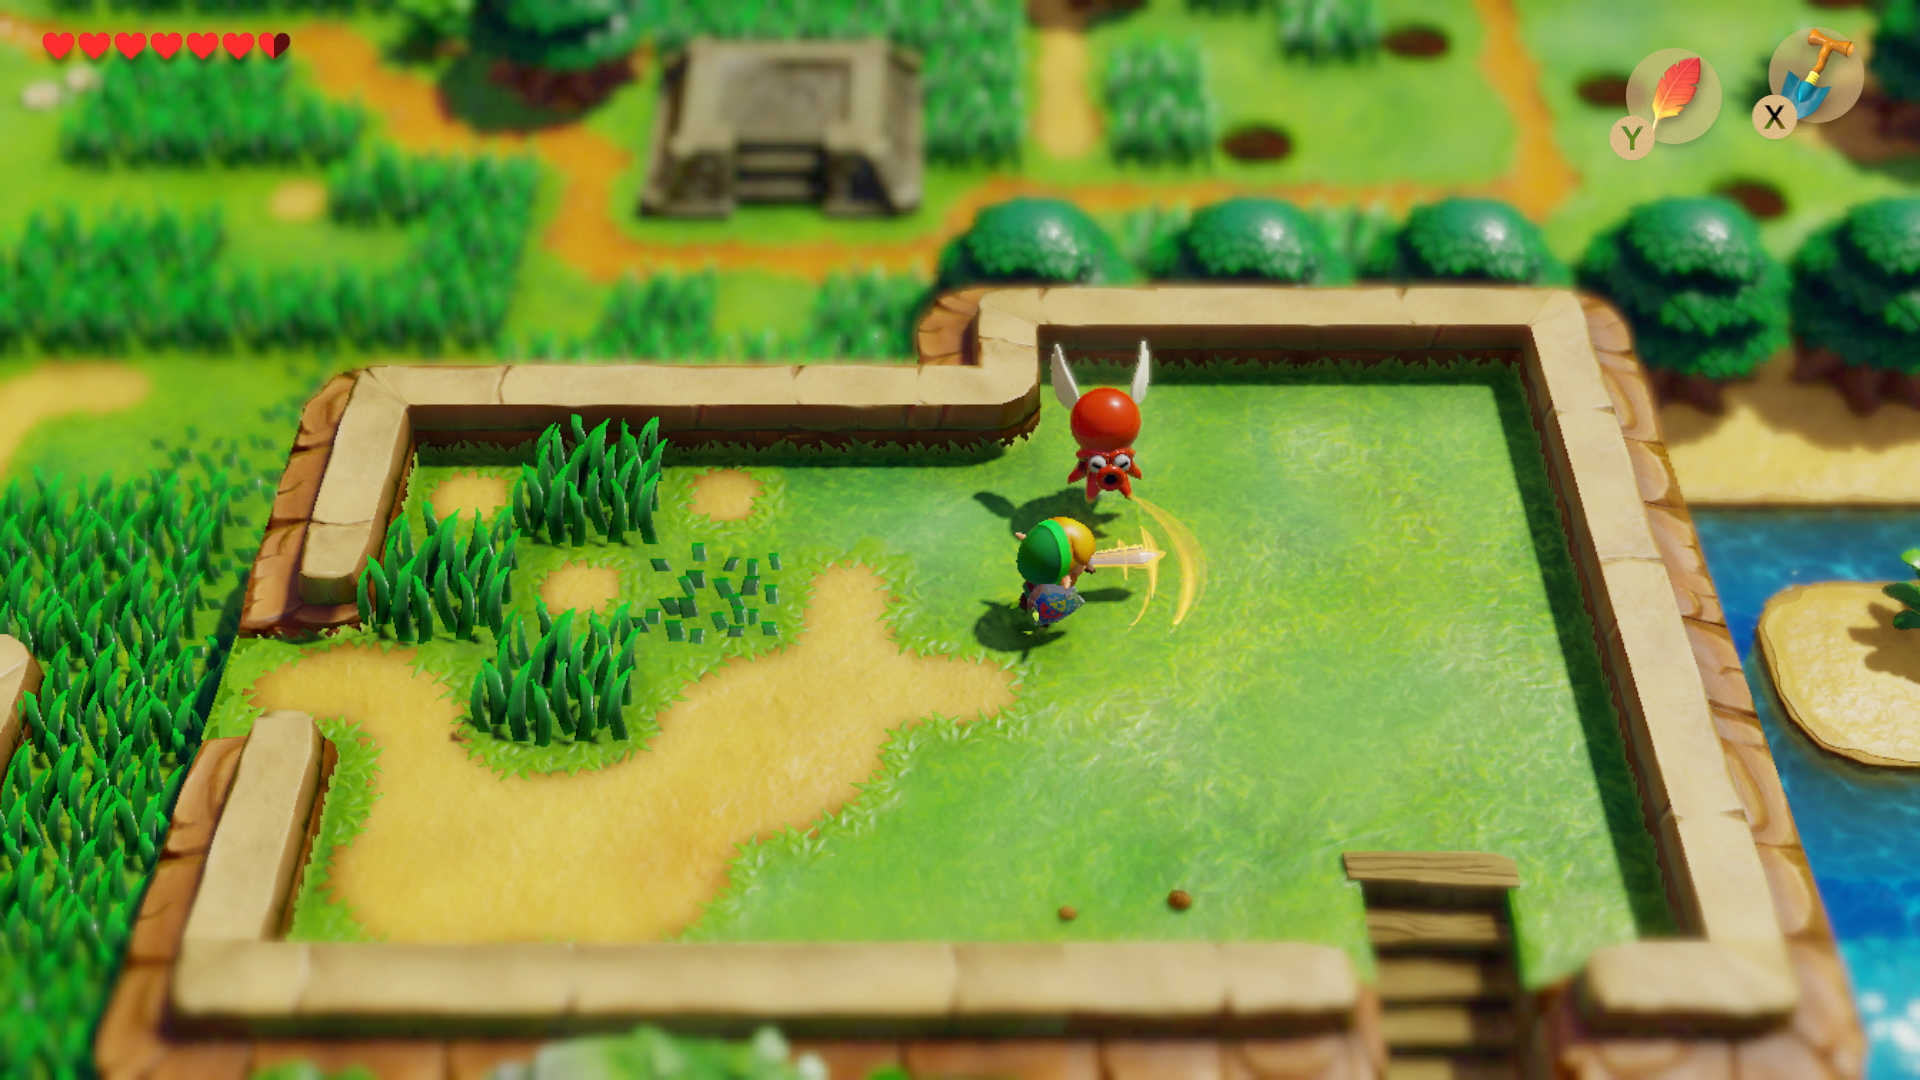 Hands on: Legend of Zelda: Link's Awakening review